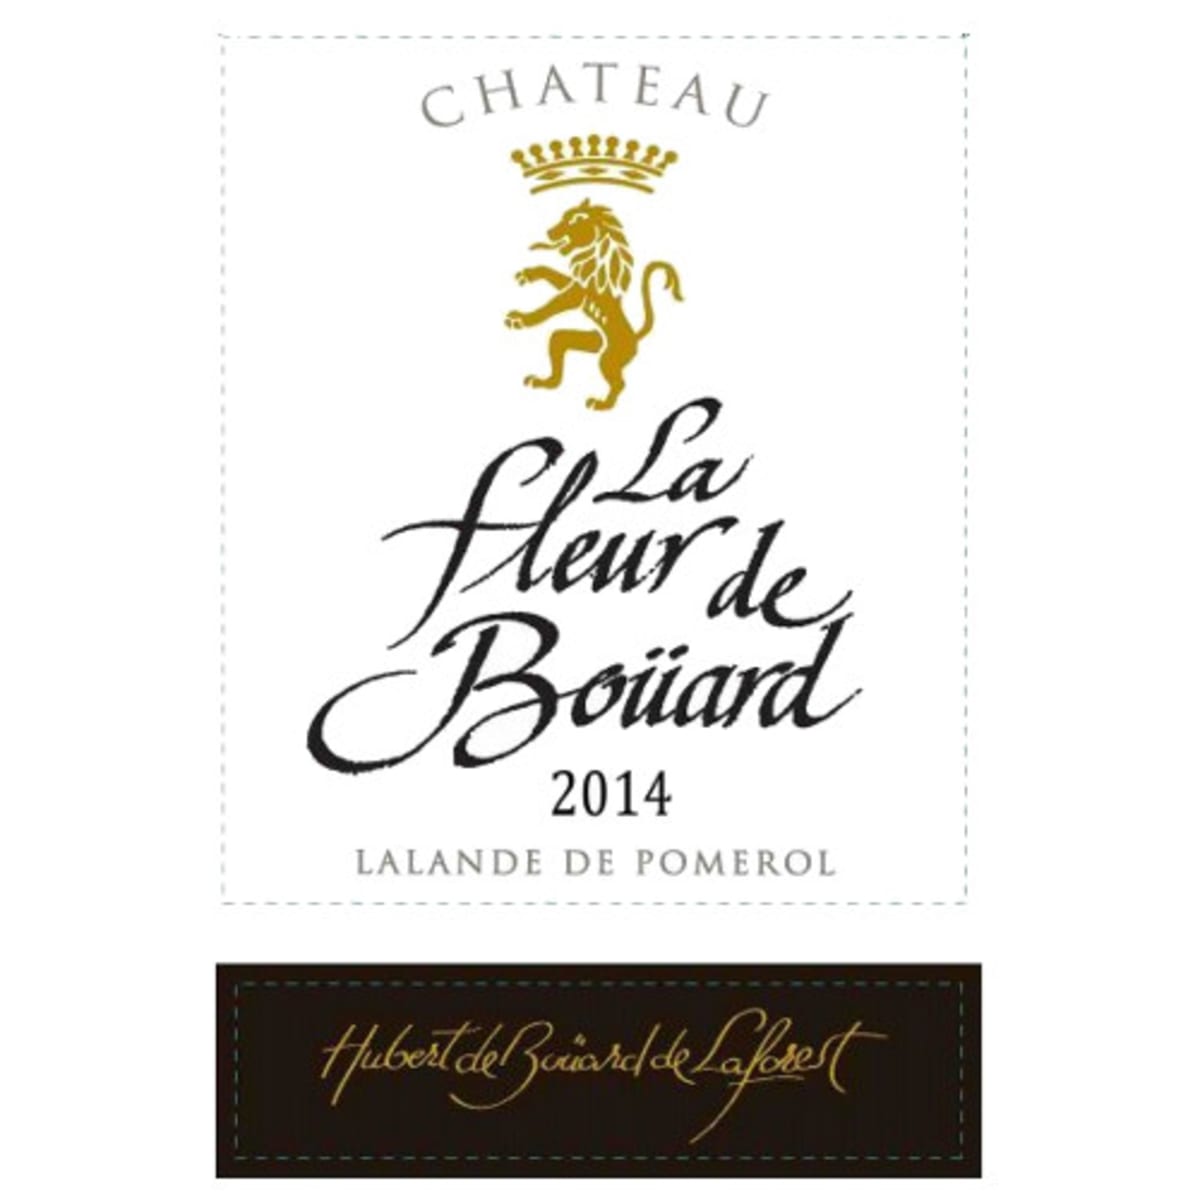 Chateau La Fleur de Bouard Lalande de Pomerol 2014 Front Label